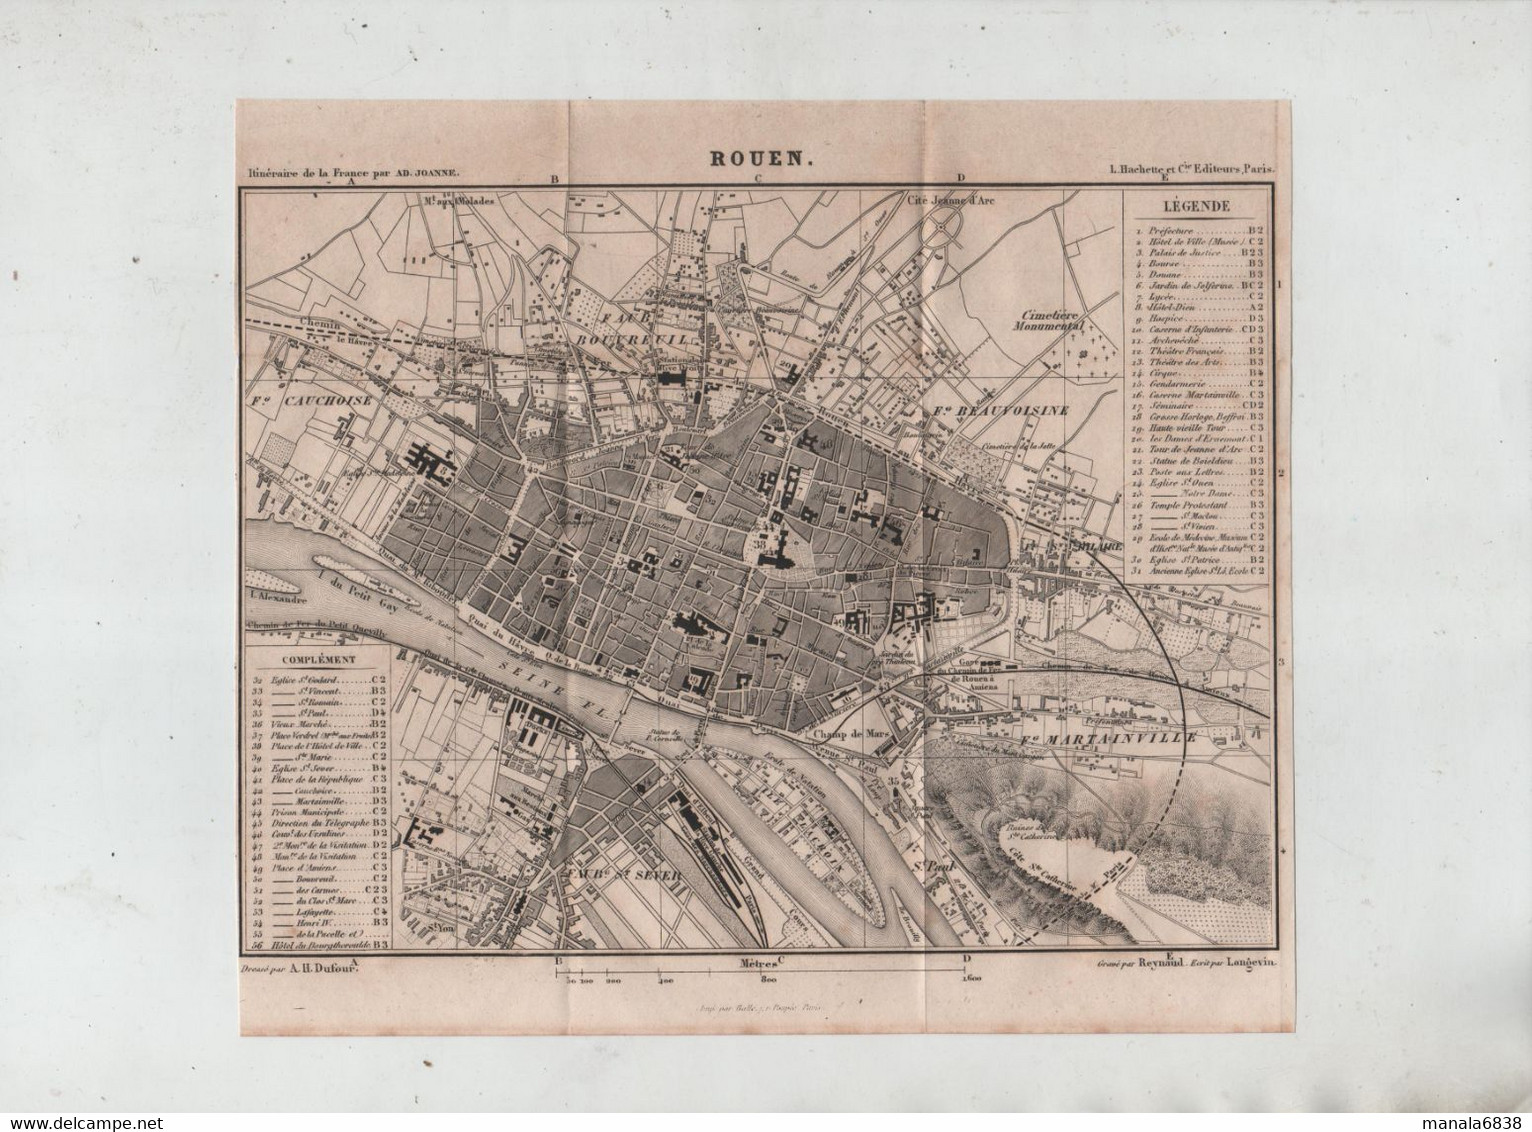 Rouen En 1877 Dufour Gare Voie Ferrée Faubourg Martainville Beauvoisine Bouvreuil Cauchoise Saint Sever Reynaud - Andere Plannen